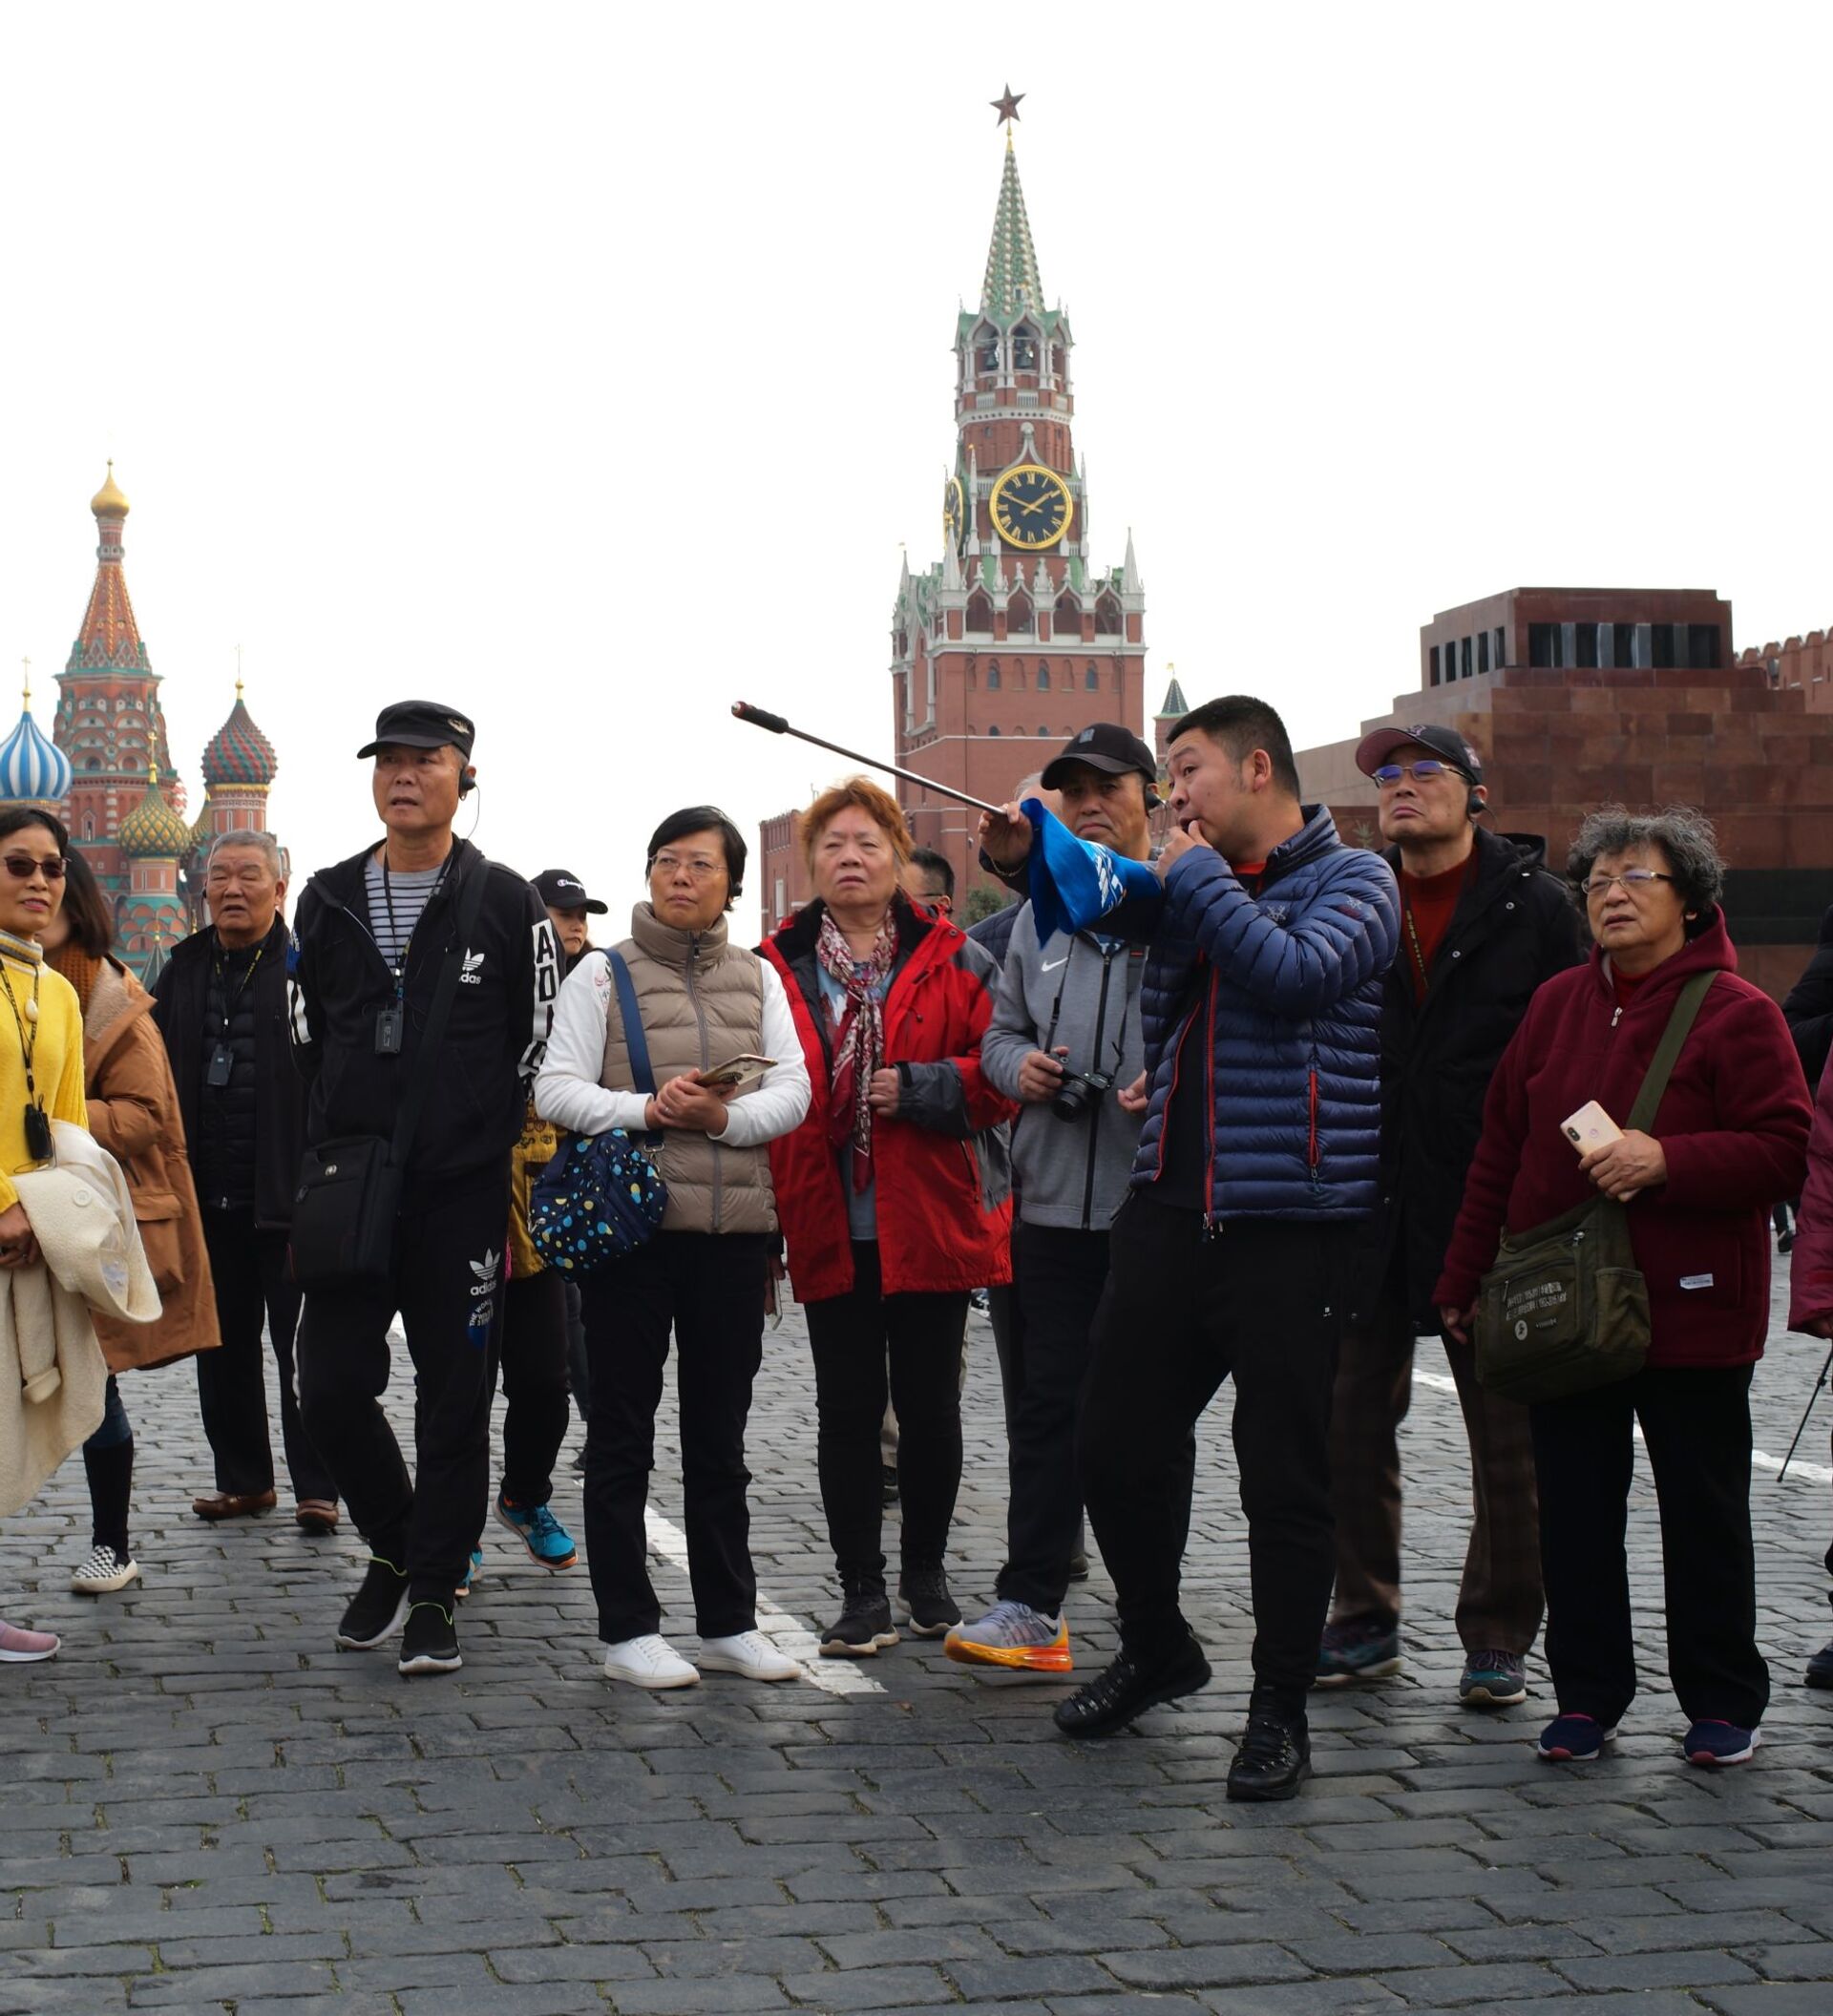 Иностранцы в сочи. Туристы в России. Иностранные туристы в России. Туристы на красной площади. Иностранные туристы в Москве.